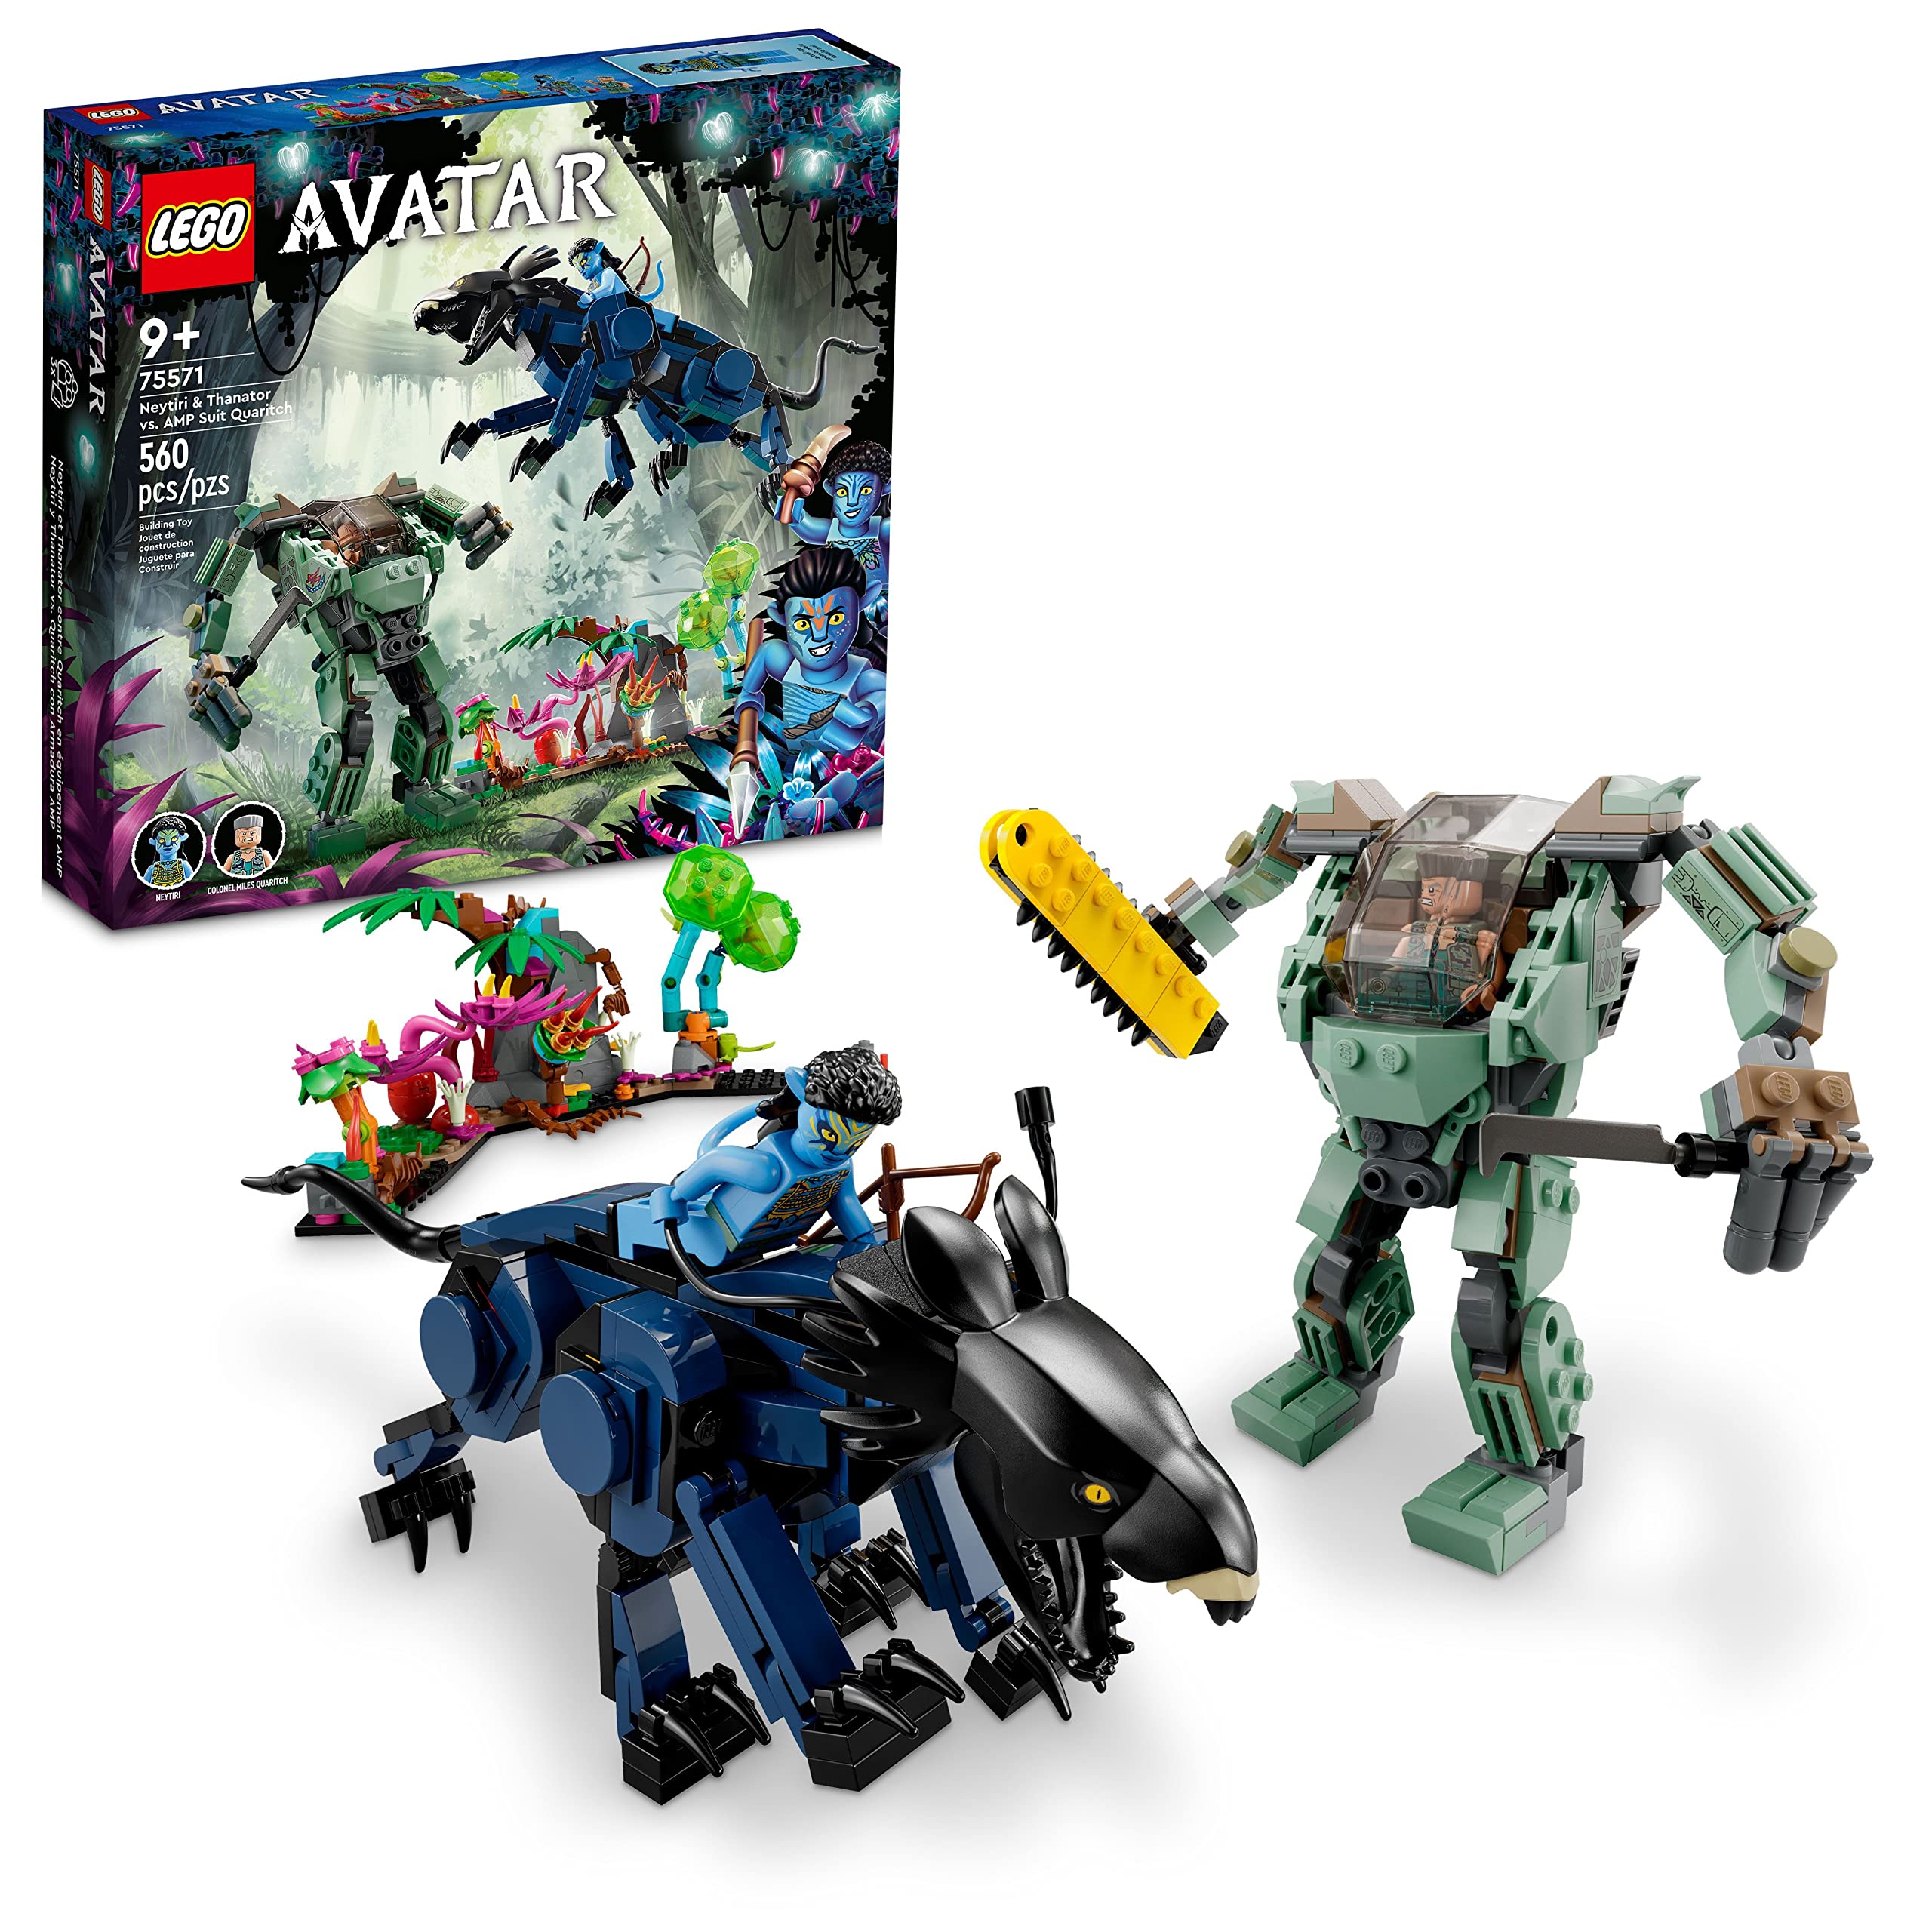 Mua LEGO Avatar Neytiri & Thanator vs. Quaritch Battle Pack 75571 2024, bạn sẽ được sở hữu một bộ đồ chơi Avatar thú vị cho trẻ em, giúp trẻ phát triển trí tưởng tượng cũng như tinh thần chiến đấu. Đây là món quà ý nghĩa cho những ai yêu thích Avatar.